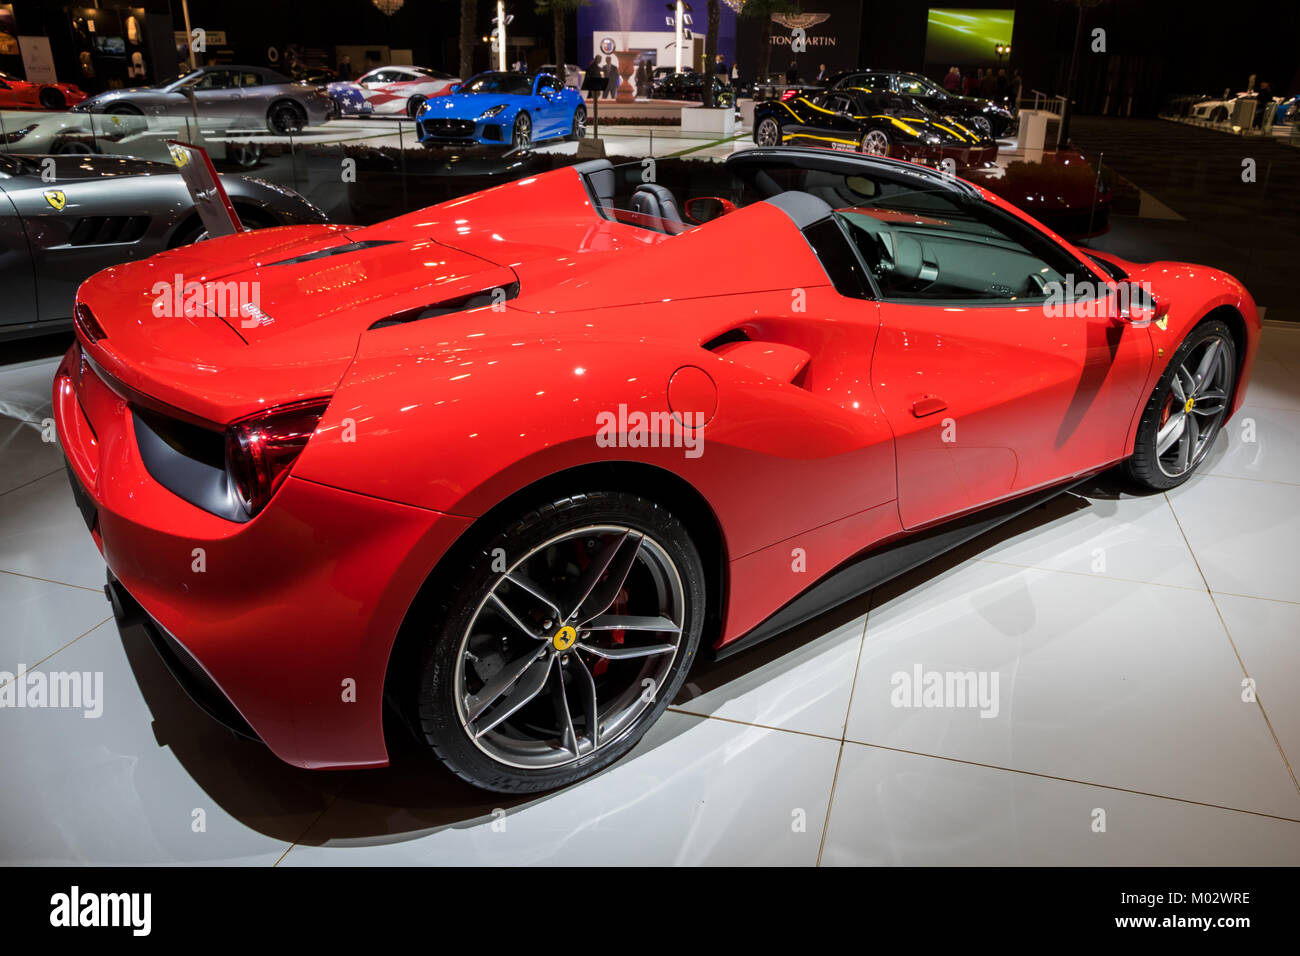 Bruselas - Jan 10, 2018: Ferrari 488 Spider coche deportivo exhibido en el Motor Show de Bruselas. Foto de stock